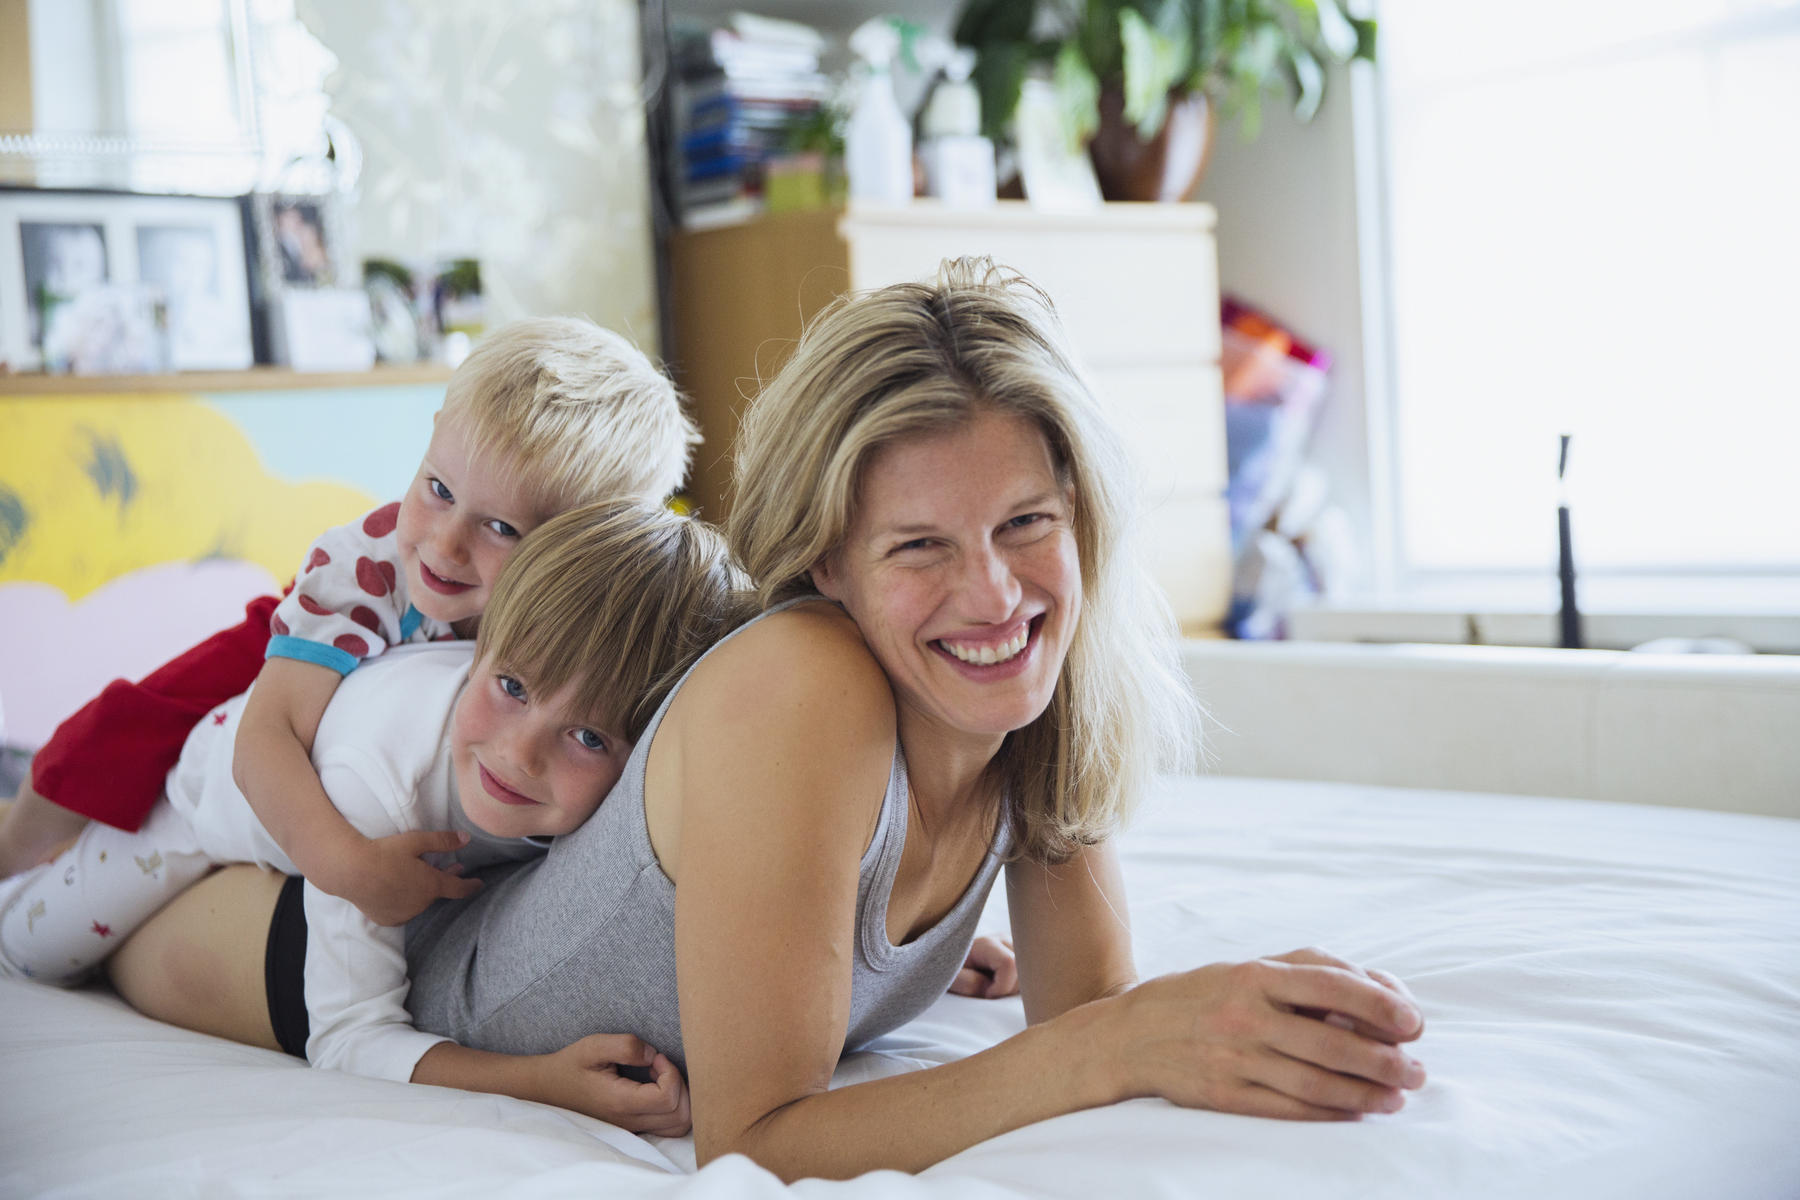 8 ჩვევა - რა უნდა გააკეთოთ იმისთვის, რომ ბედნიერი დედა იყოთ?